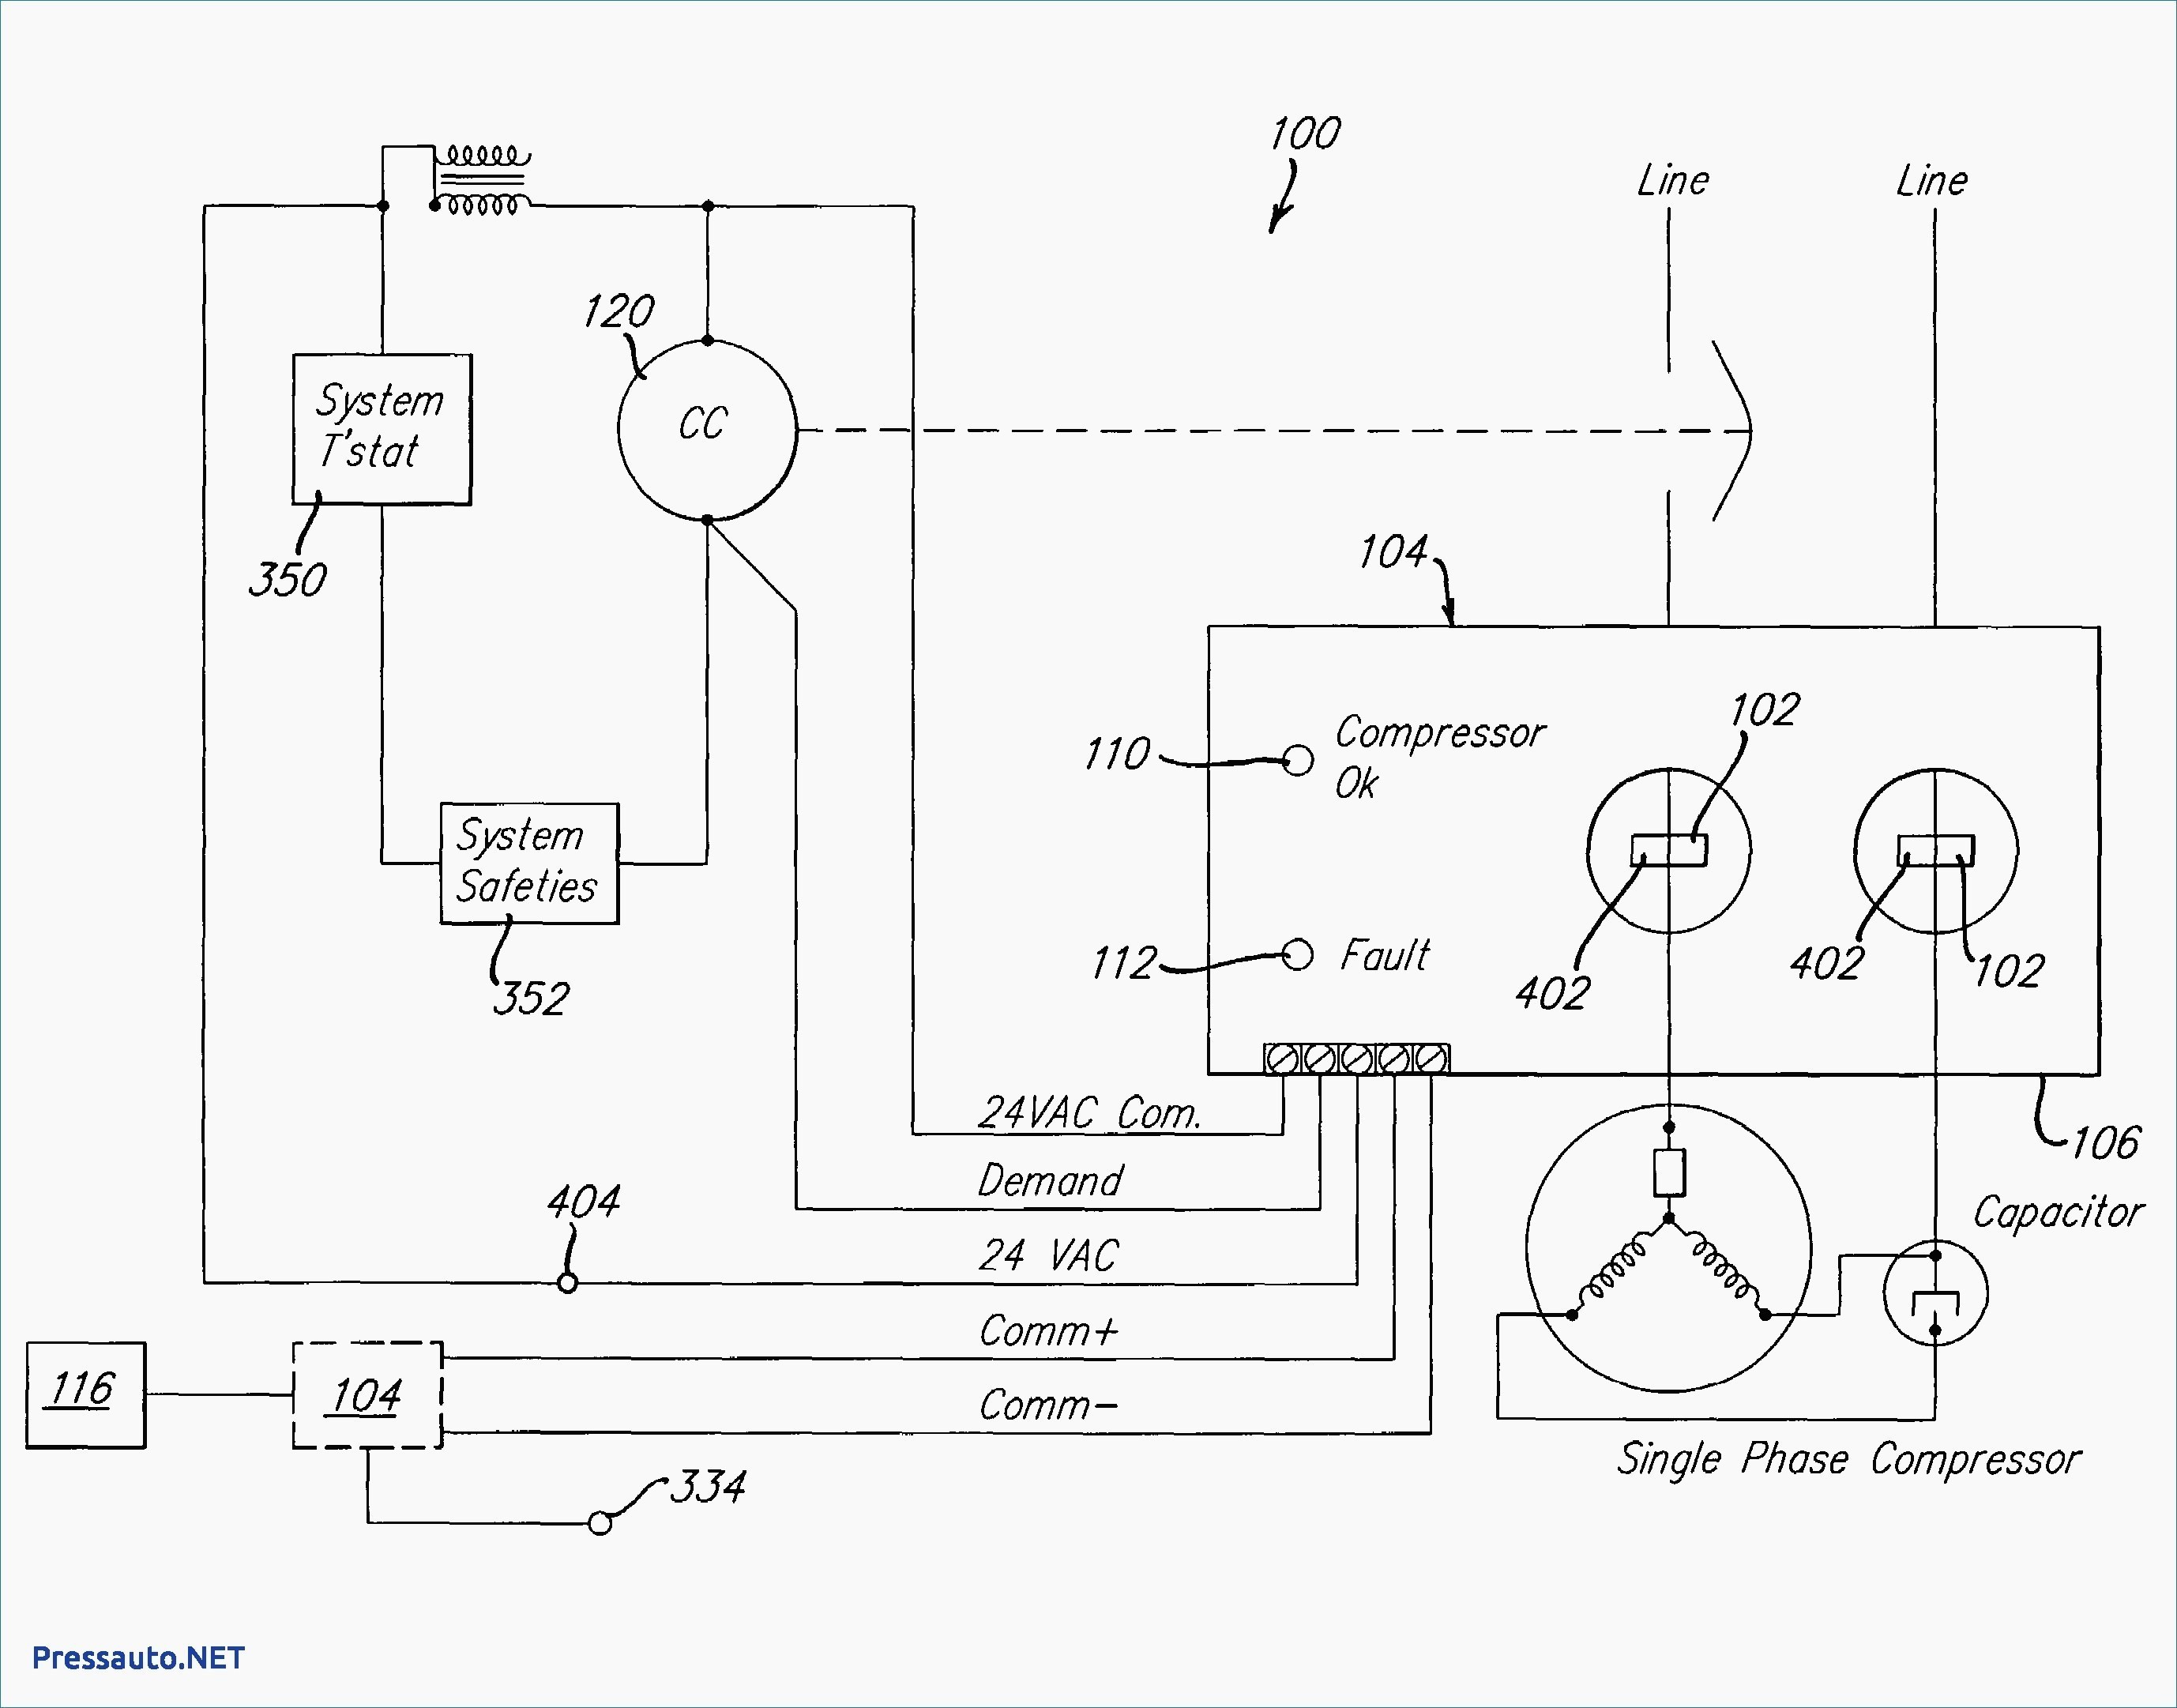 Hvac Fan Wiring Diagram Save Hvac Condenser Wiring Diagram Inspirationa 3 Wire Condenser Fan